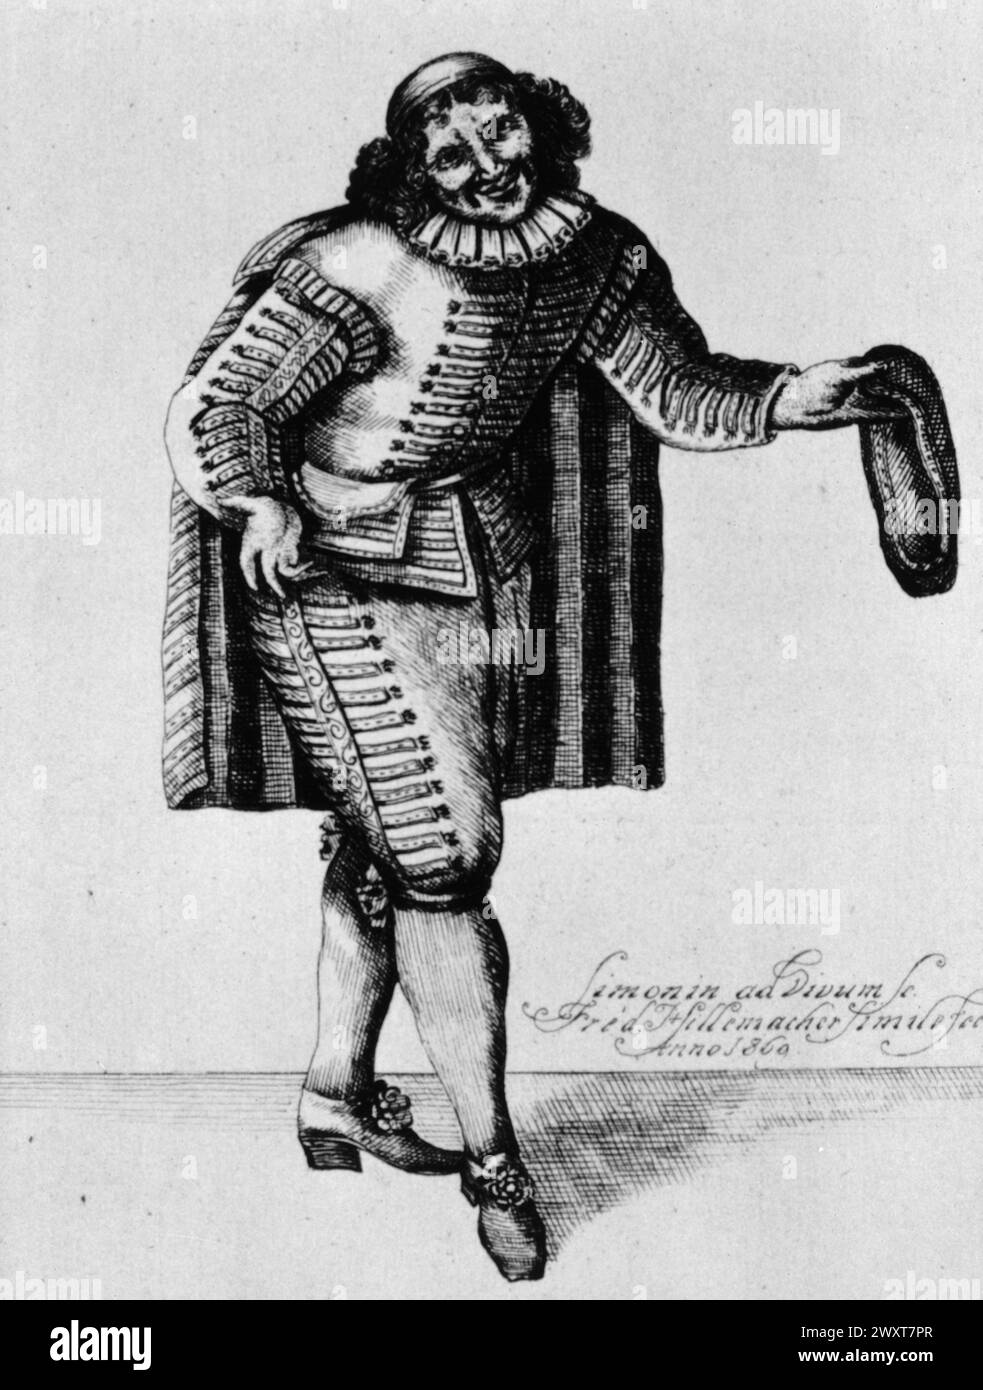 Dramaturge française Molière dans le costume du personnage Sganarelle, illustration, XVIIe siècle Banque D'Images